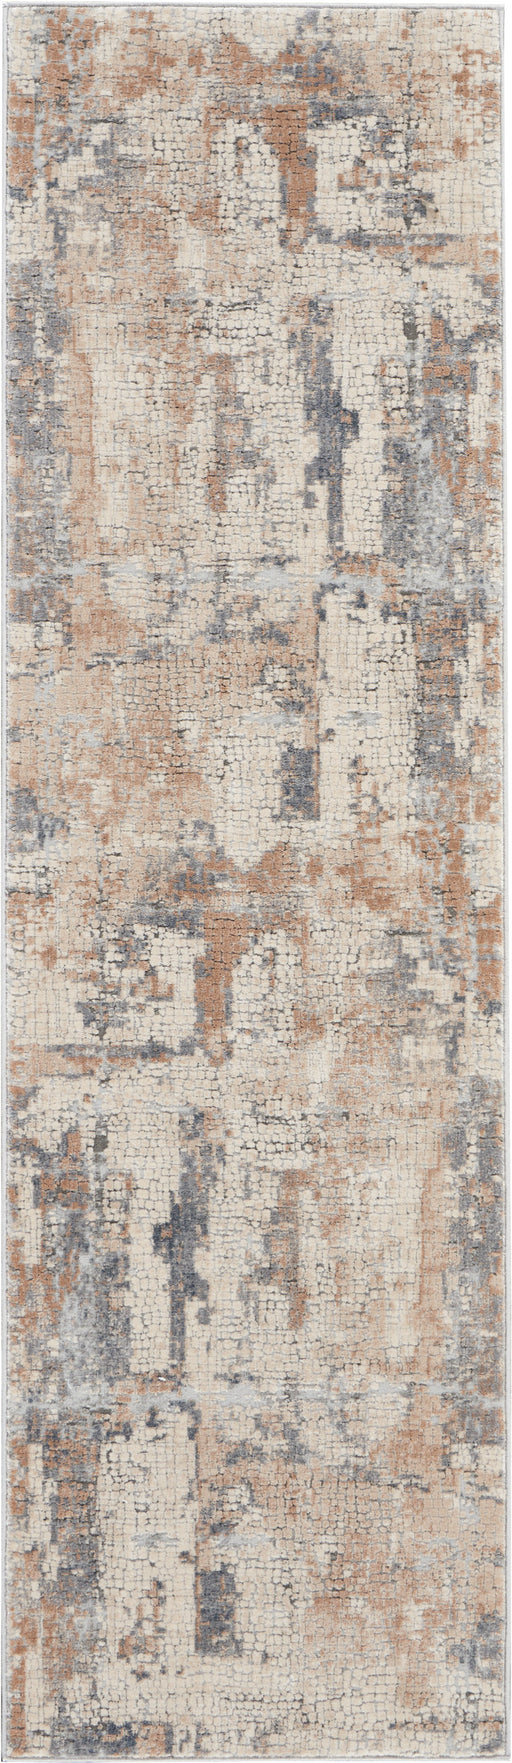 Nourison Rustic Textures RUS06 Beige and Grey 8' Runner Hallway Rug